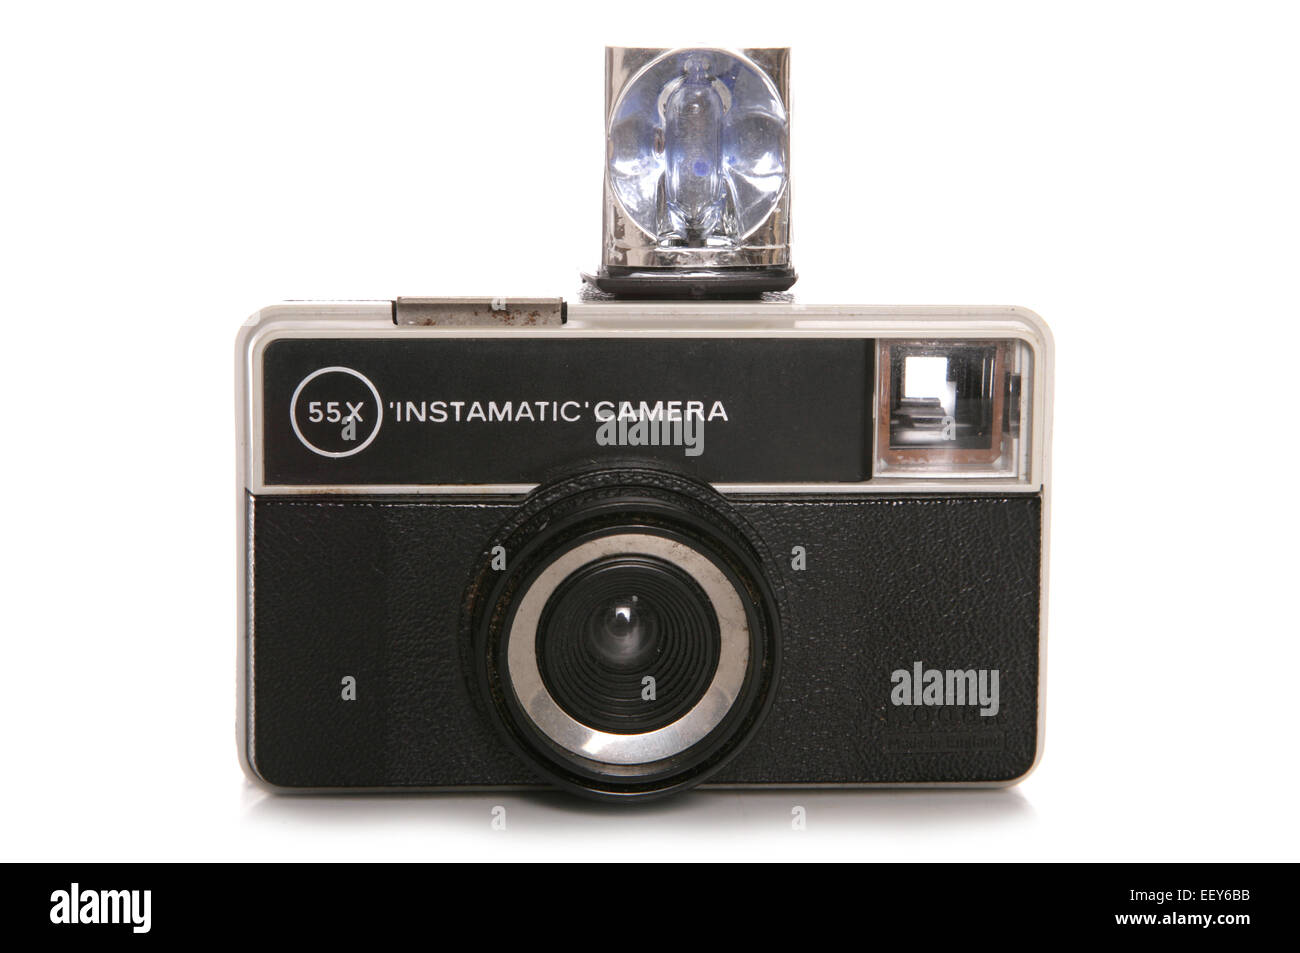 55x Instamatic appareil photo avec flash décoration Banque D'Images